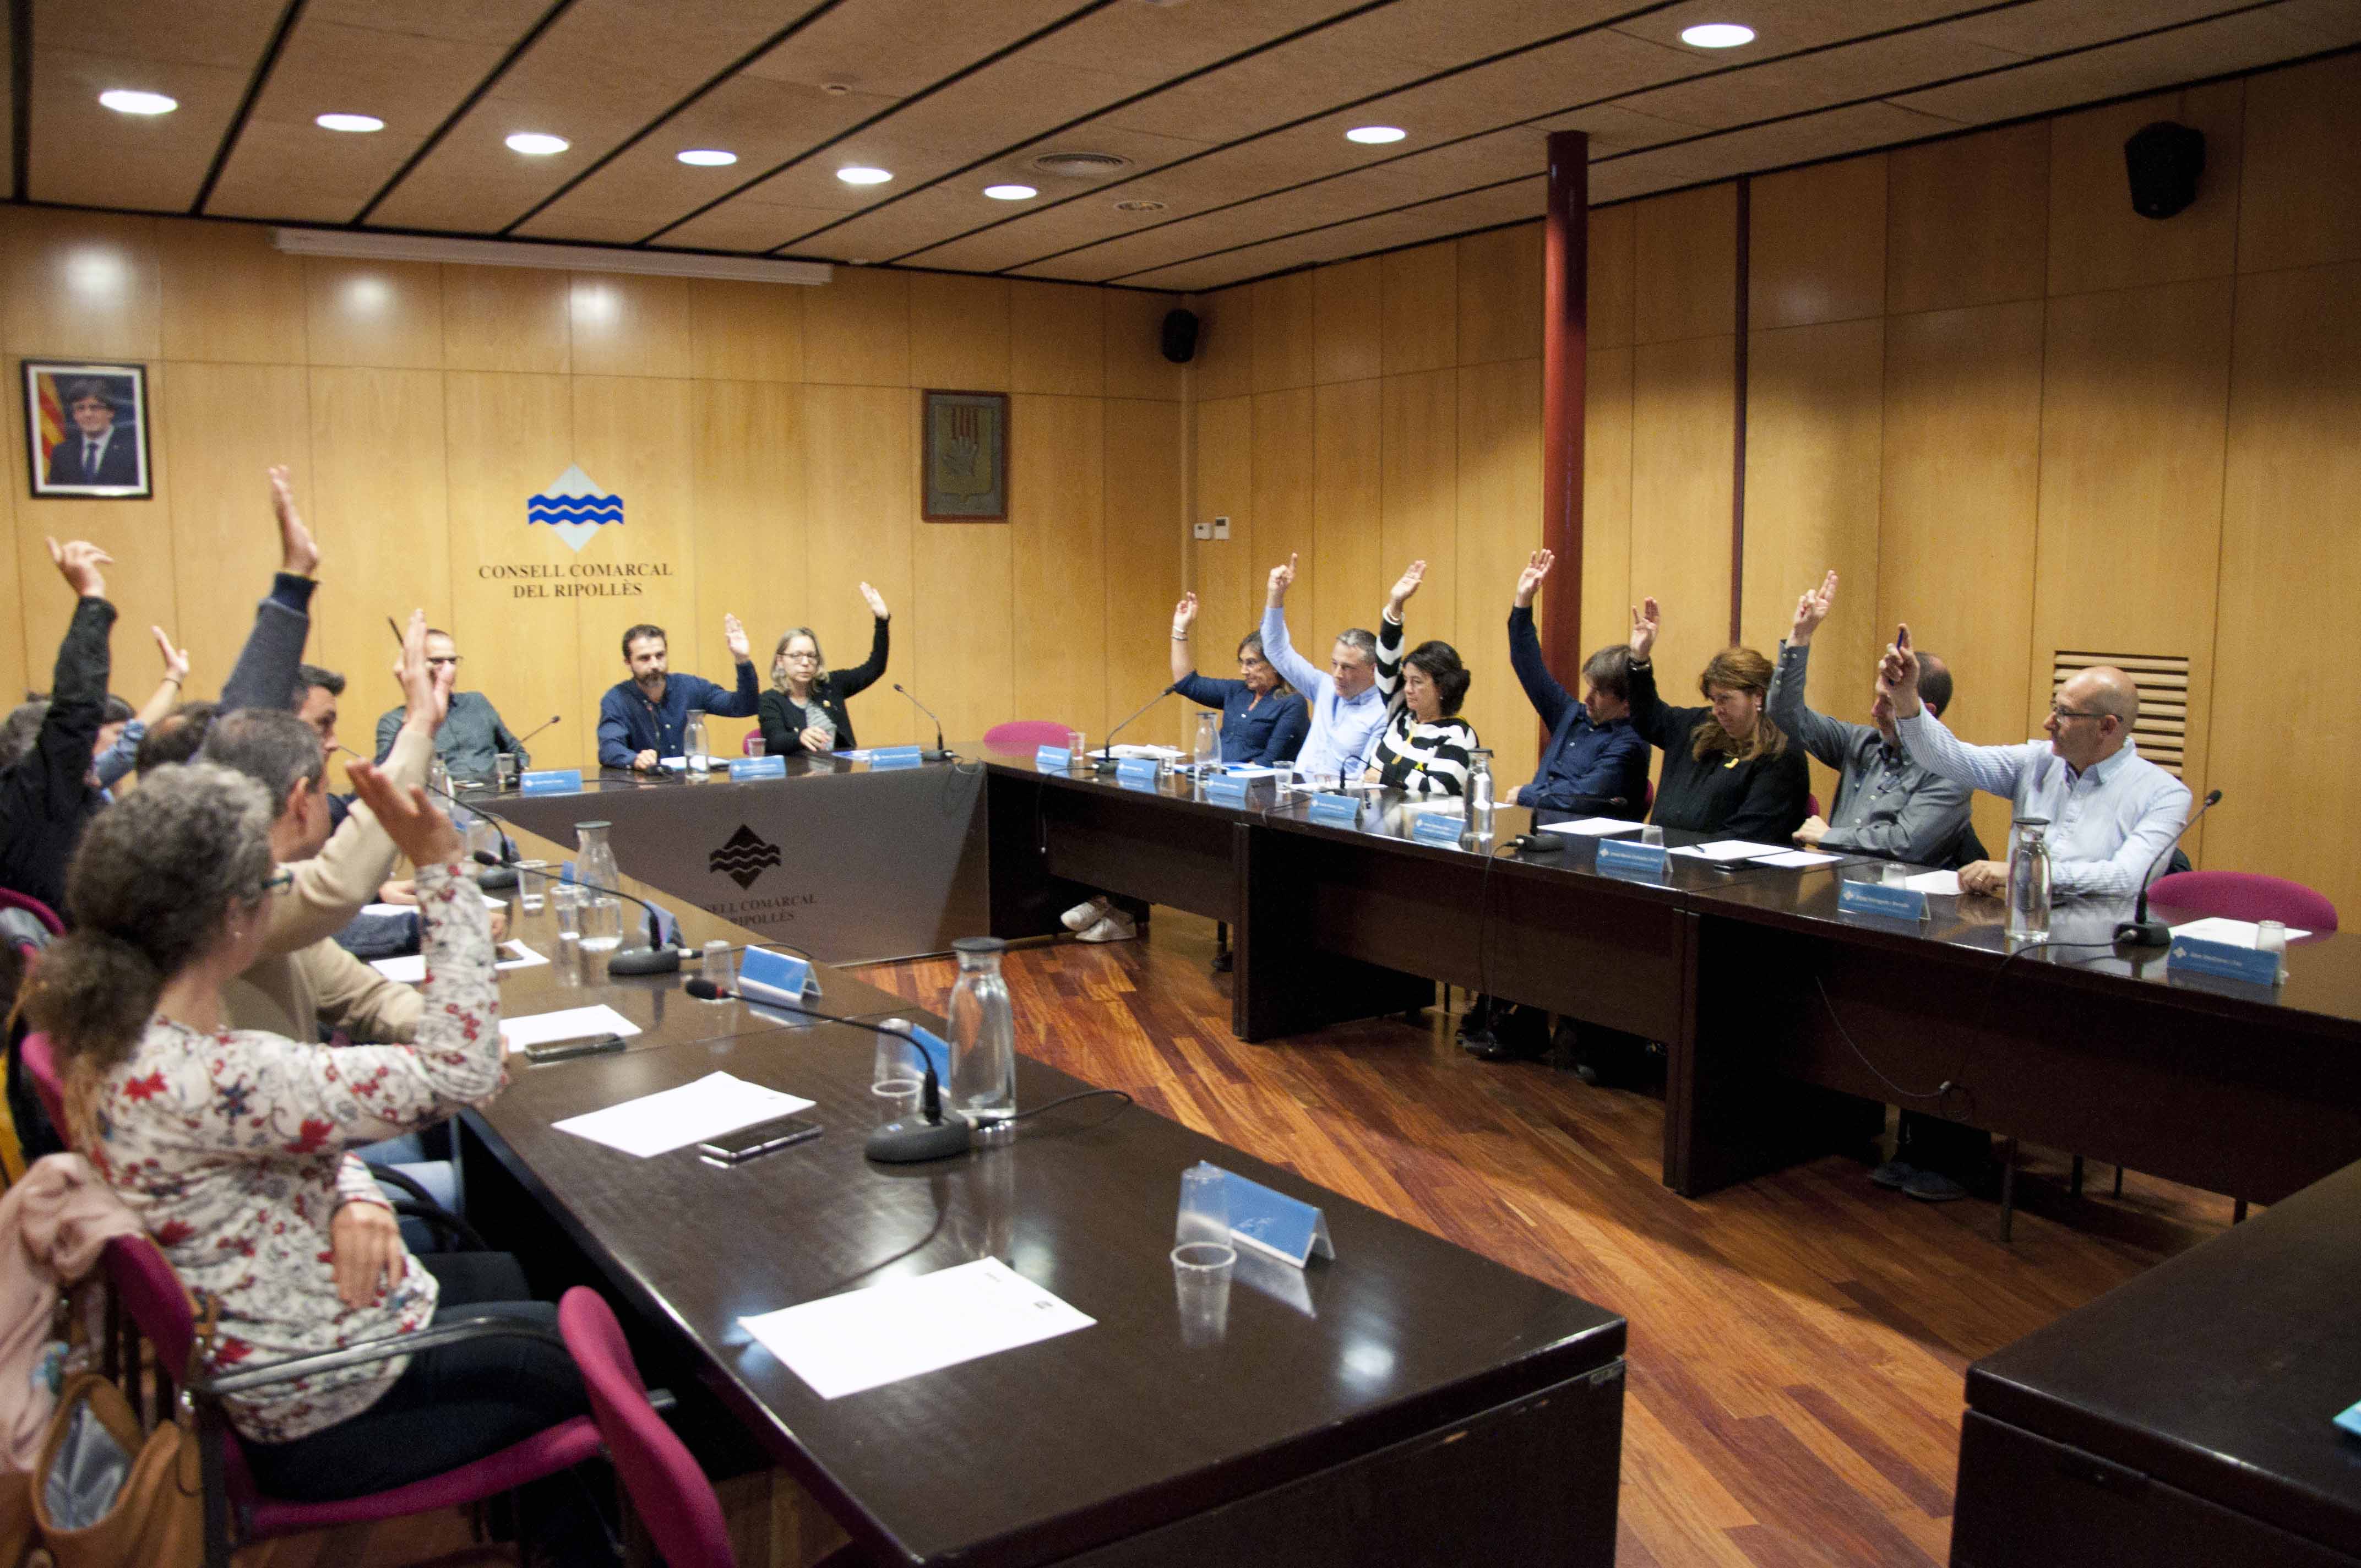 El consell comarcal reprova amb una moció la sentència del judici dels fets de l’1 d’octubre